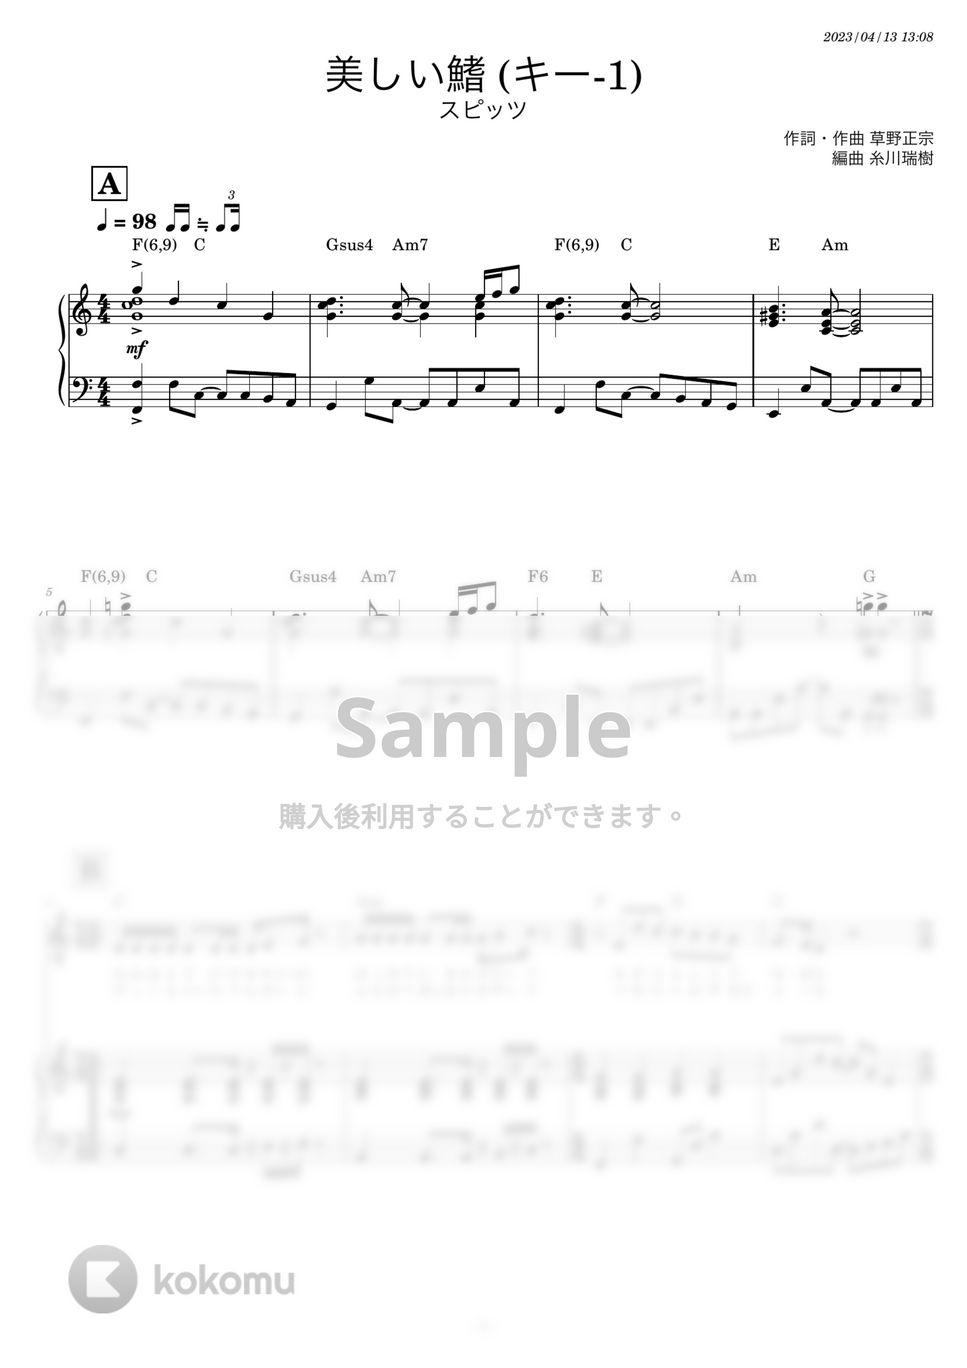 スピッツ - 美しい鰭 (キー-1 Cメジャー やや簡単ピアノ伴奏) by 糸川瑞樹